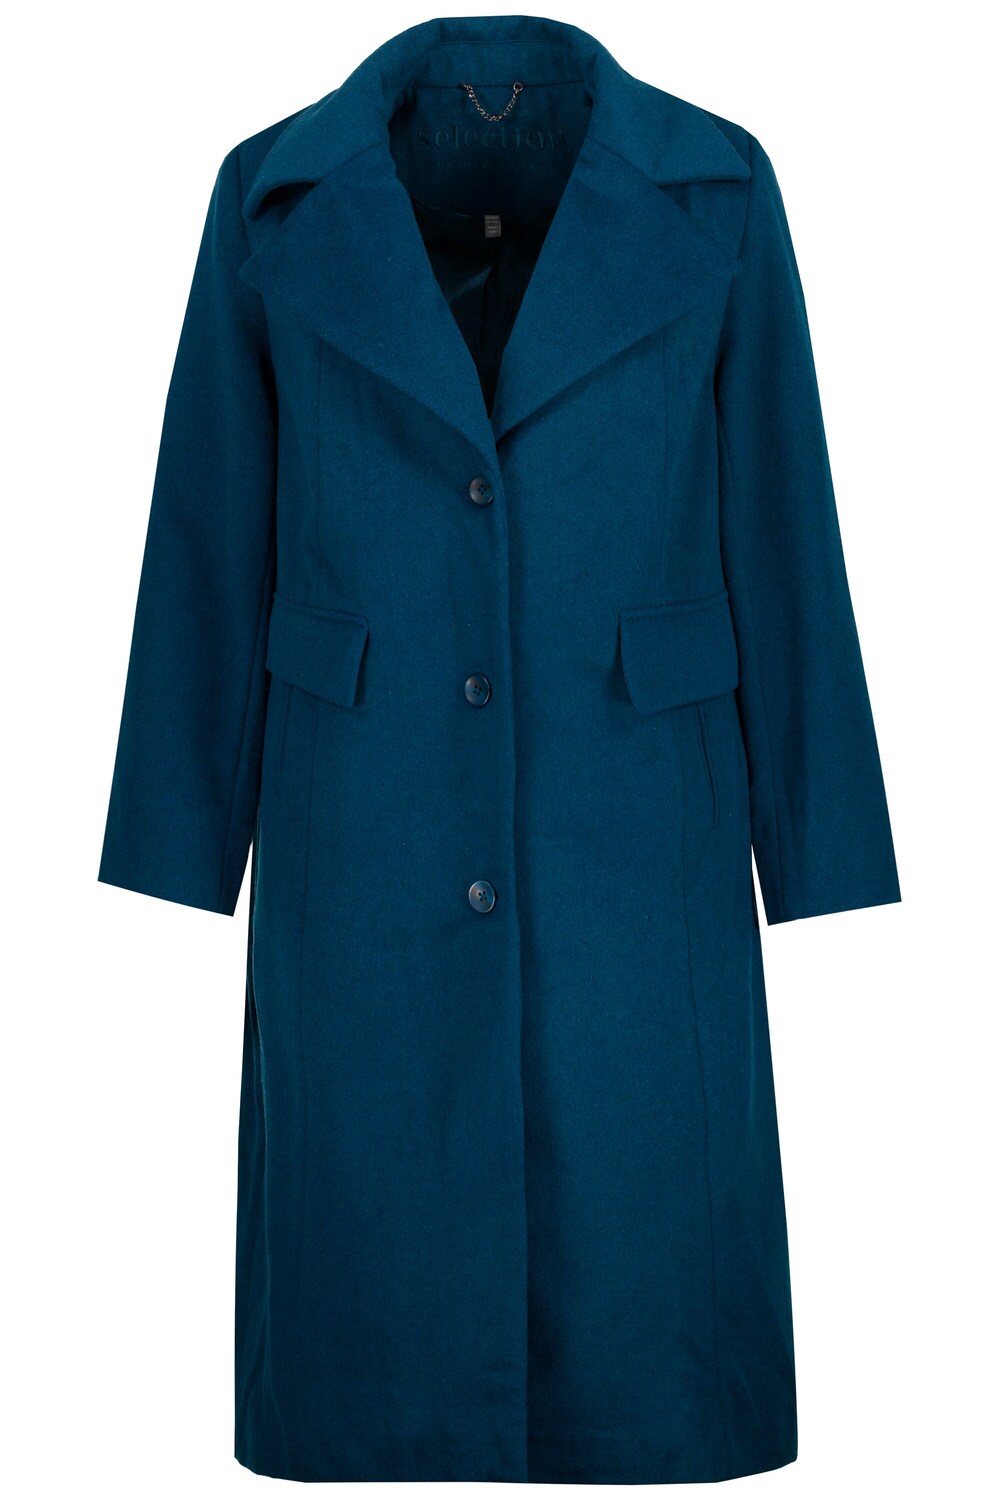 Межсезонное пальто Ulla Popken, синий межсезонное пальто ulla popken пестрый коричневый